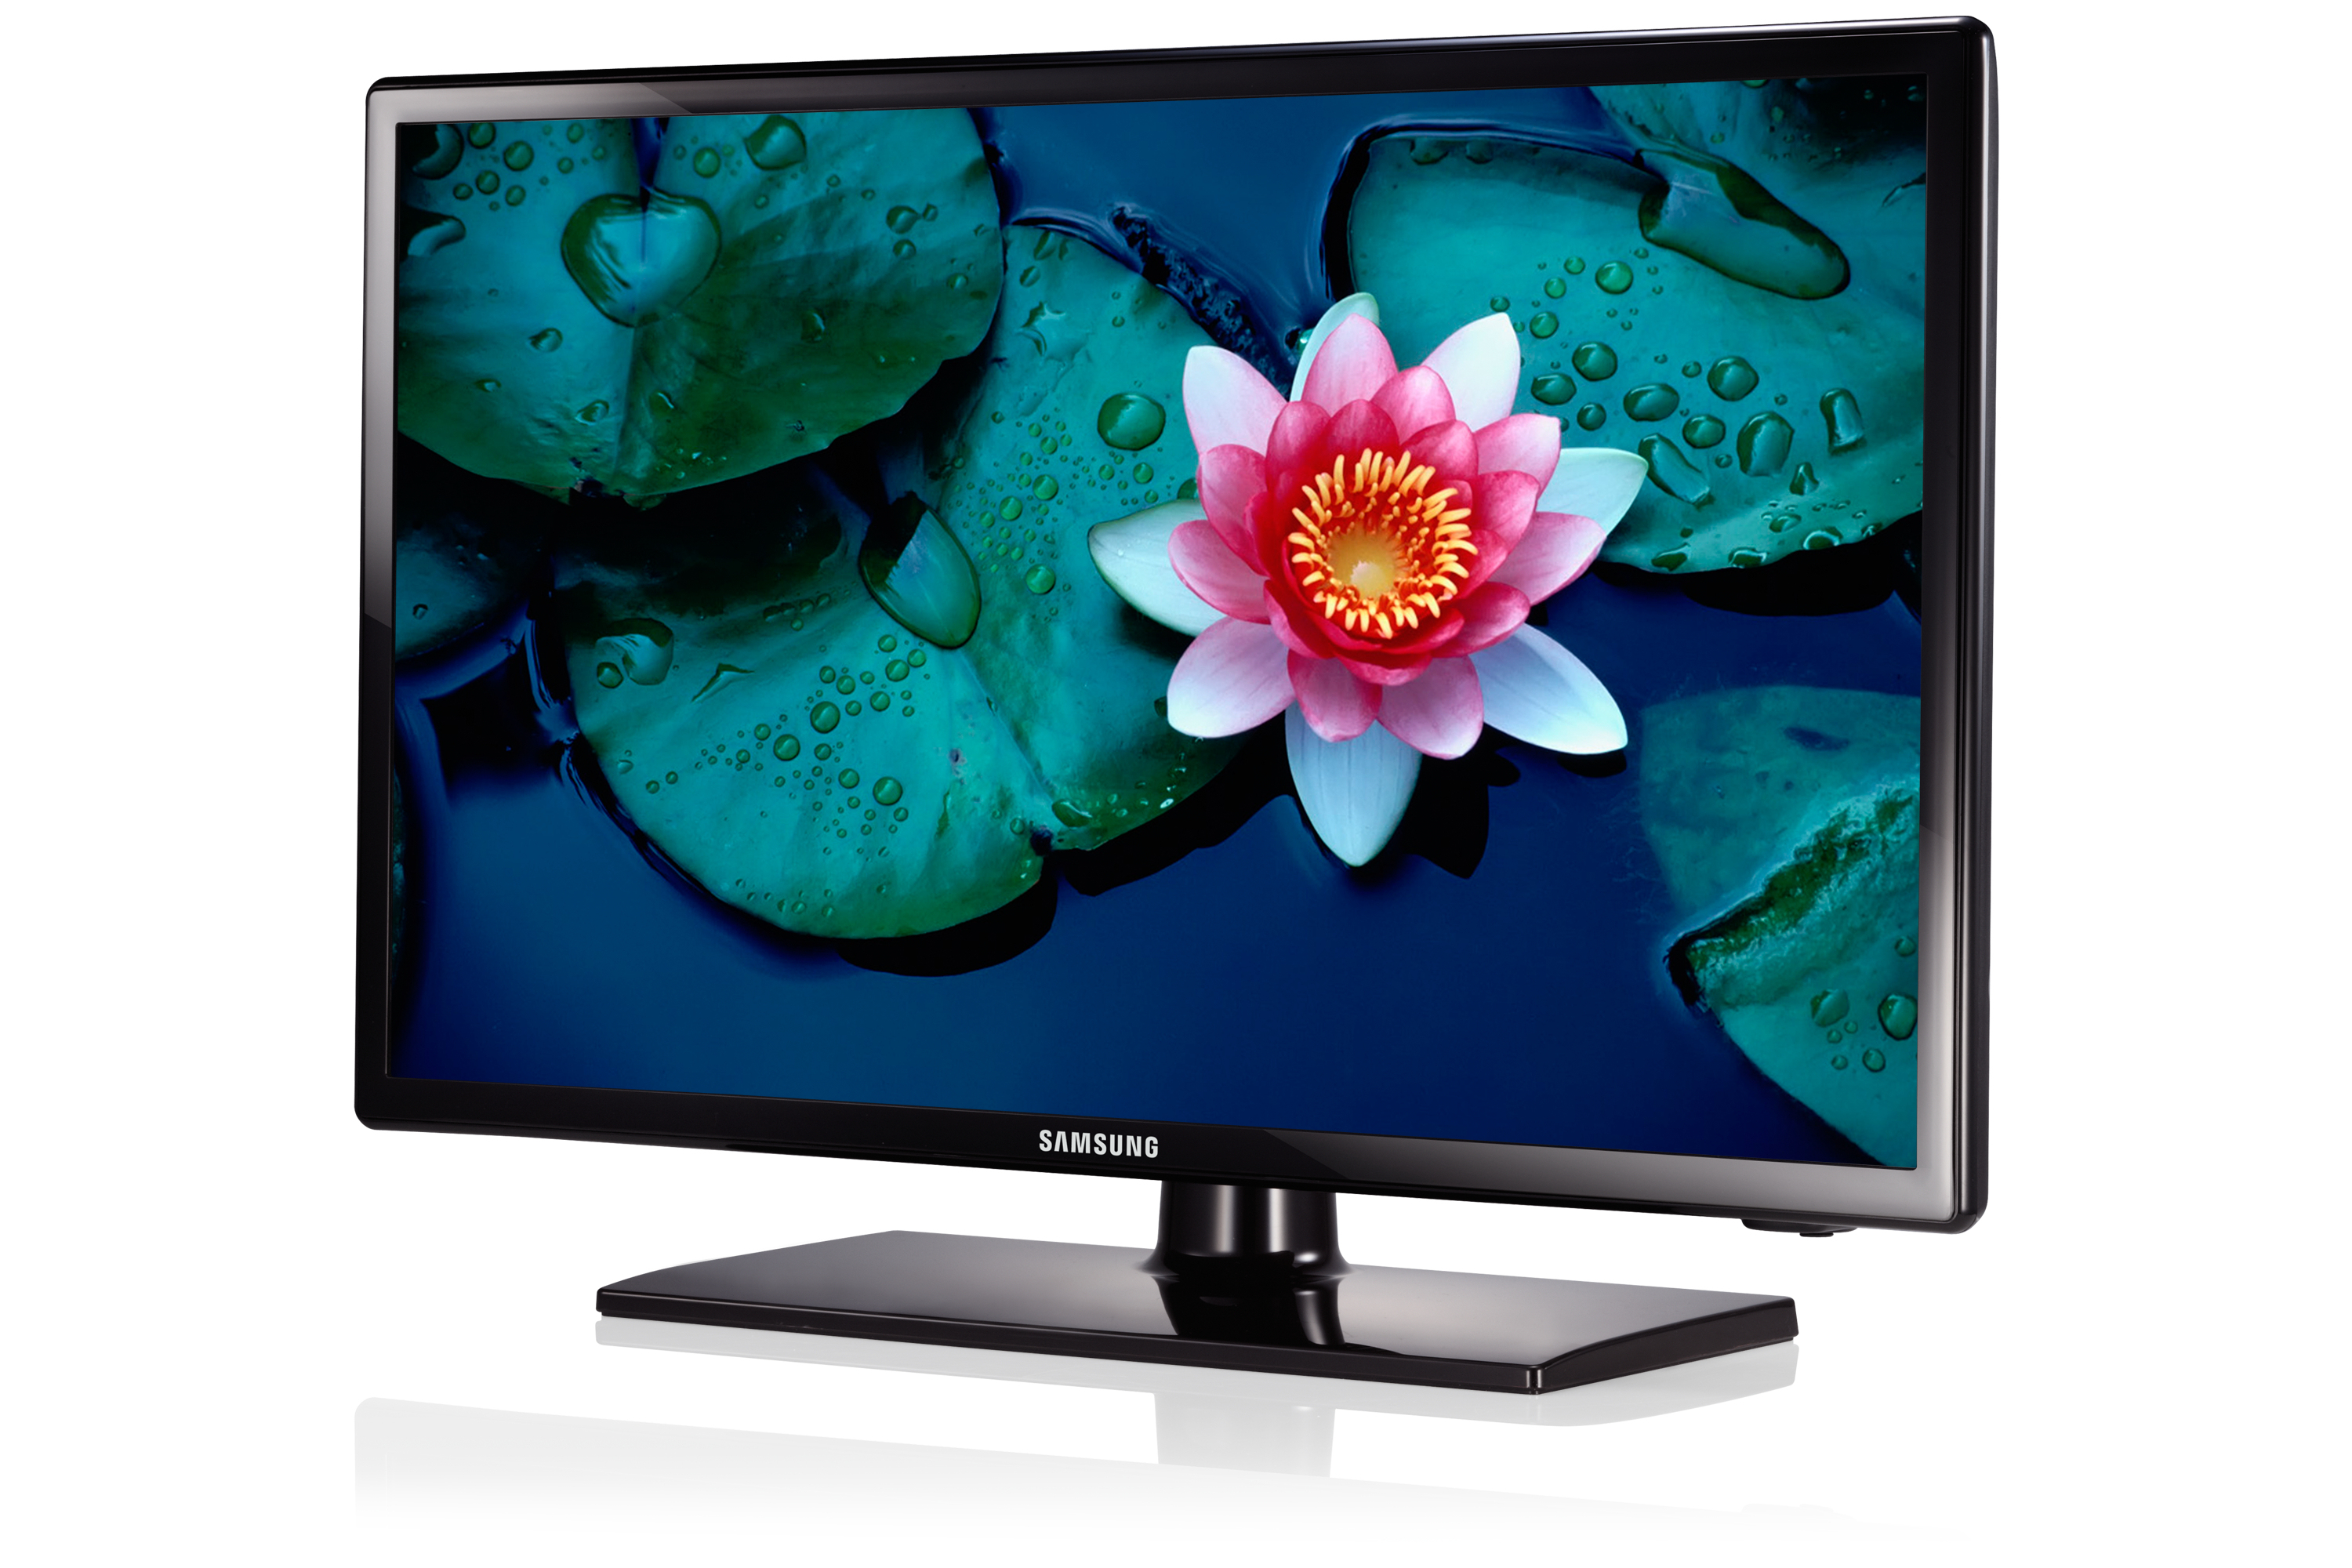 Телевизор самсунг 32 дюйма купить в москве. Samsung ue32eh4000w. Самсунг модель ue32eh4000w. Лед телевизор самсунг ue32eh4000w. Самсунг 32 дюйма.